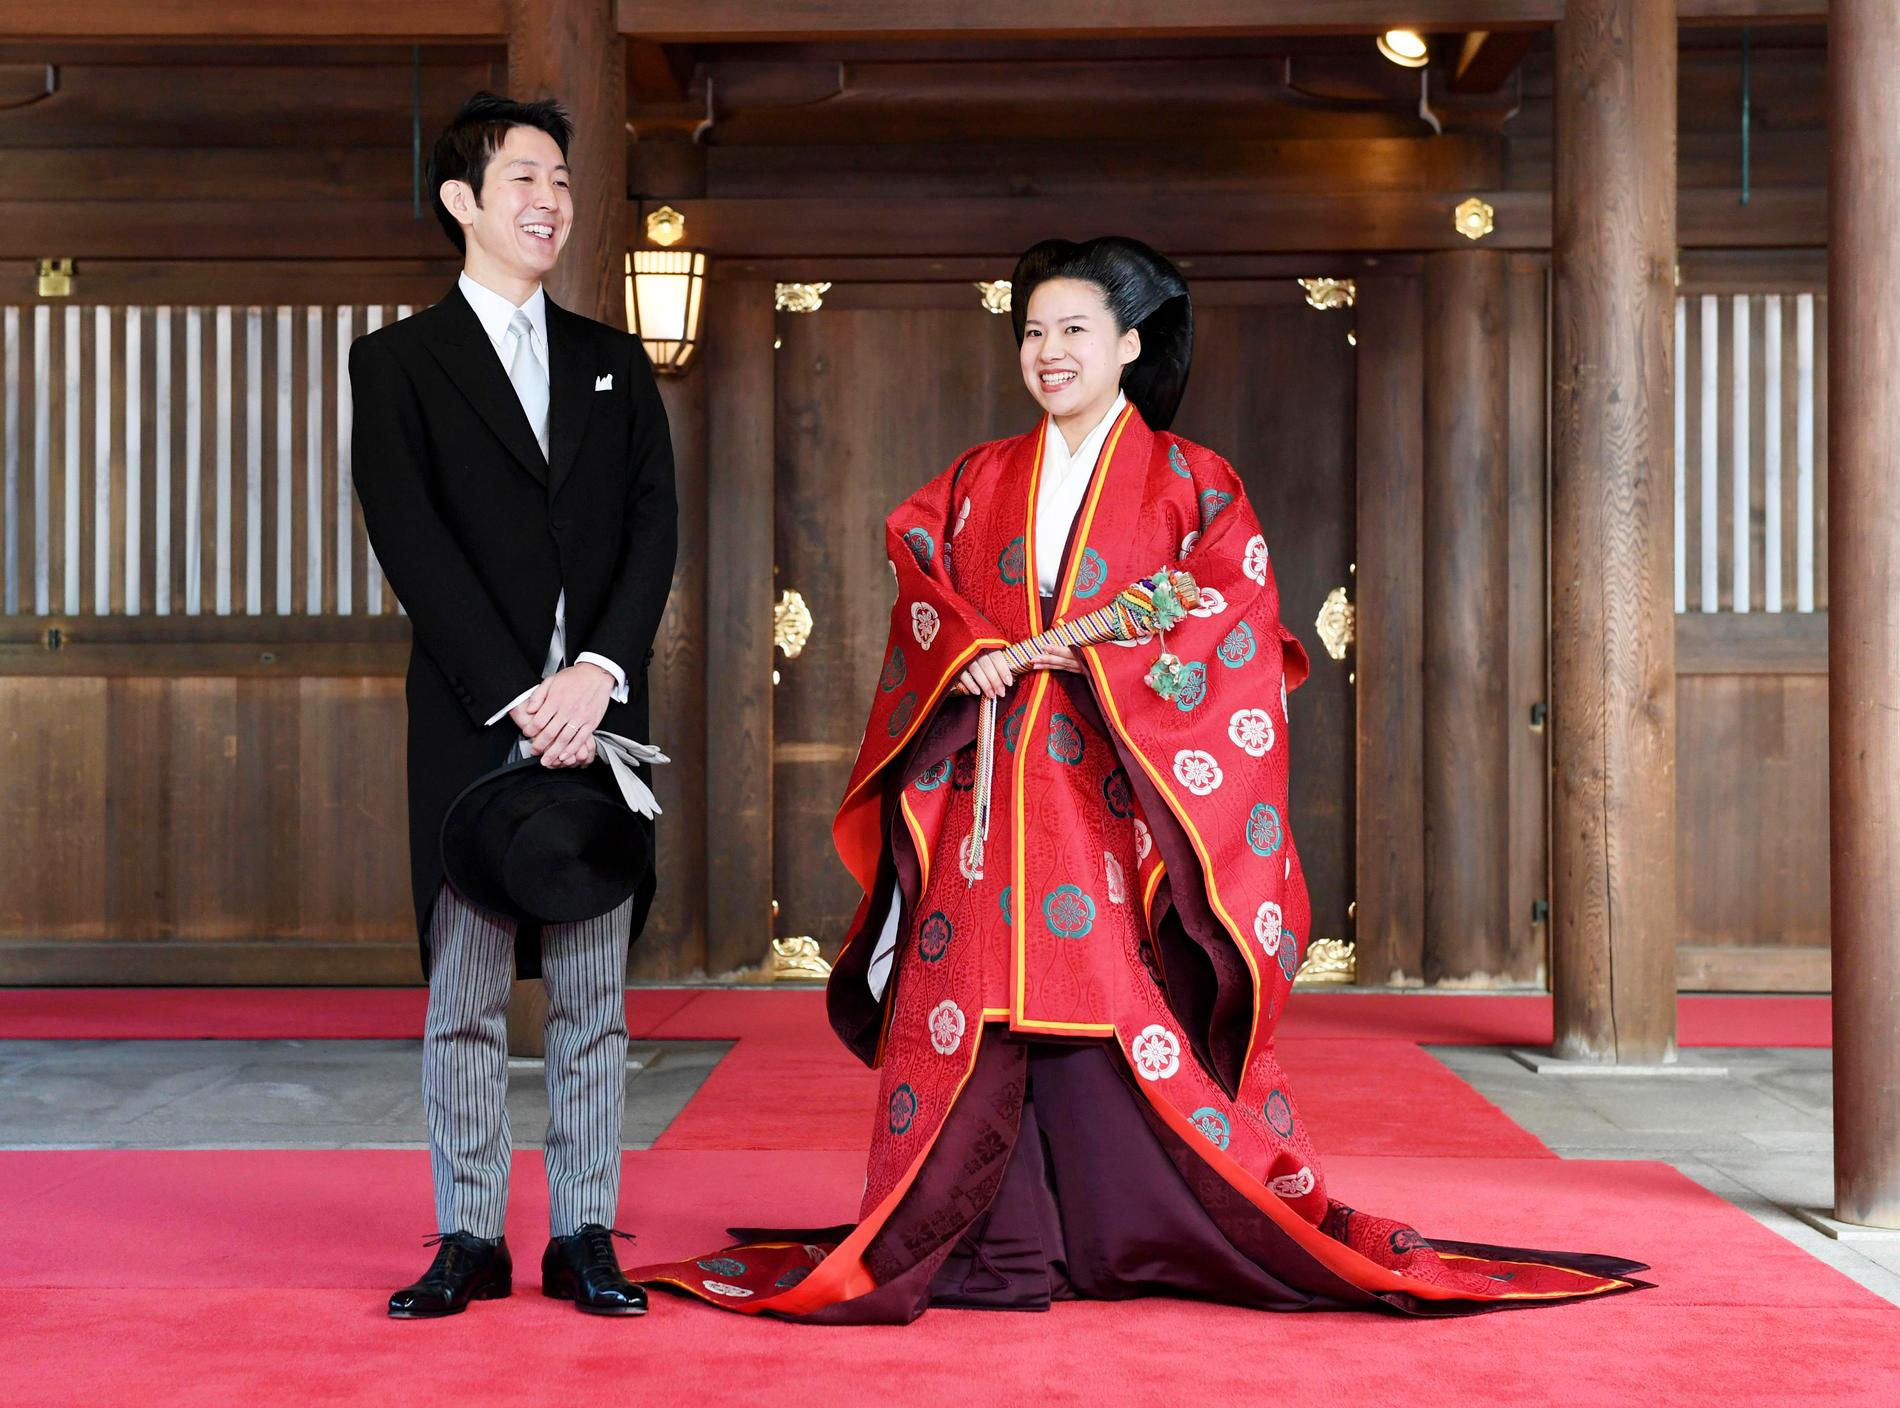 Prinsessan Ayako gifte sig med en skeppsmäklare – och blev av med sin titel. Precis som alla japanska prinsessor som gifter sig med en ofrälse.